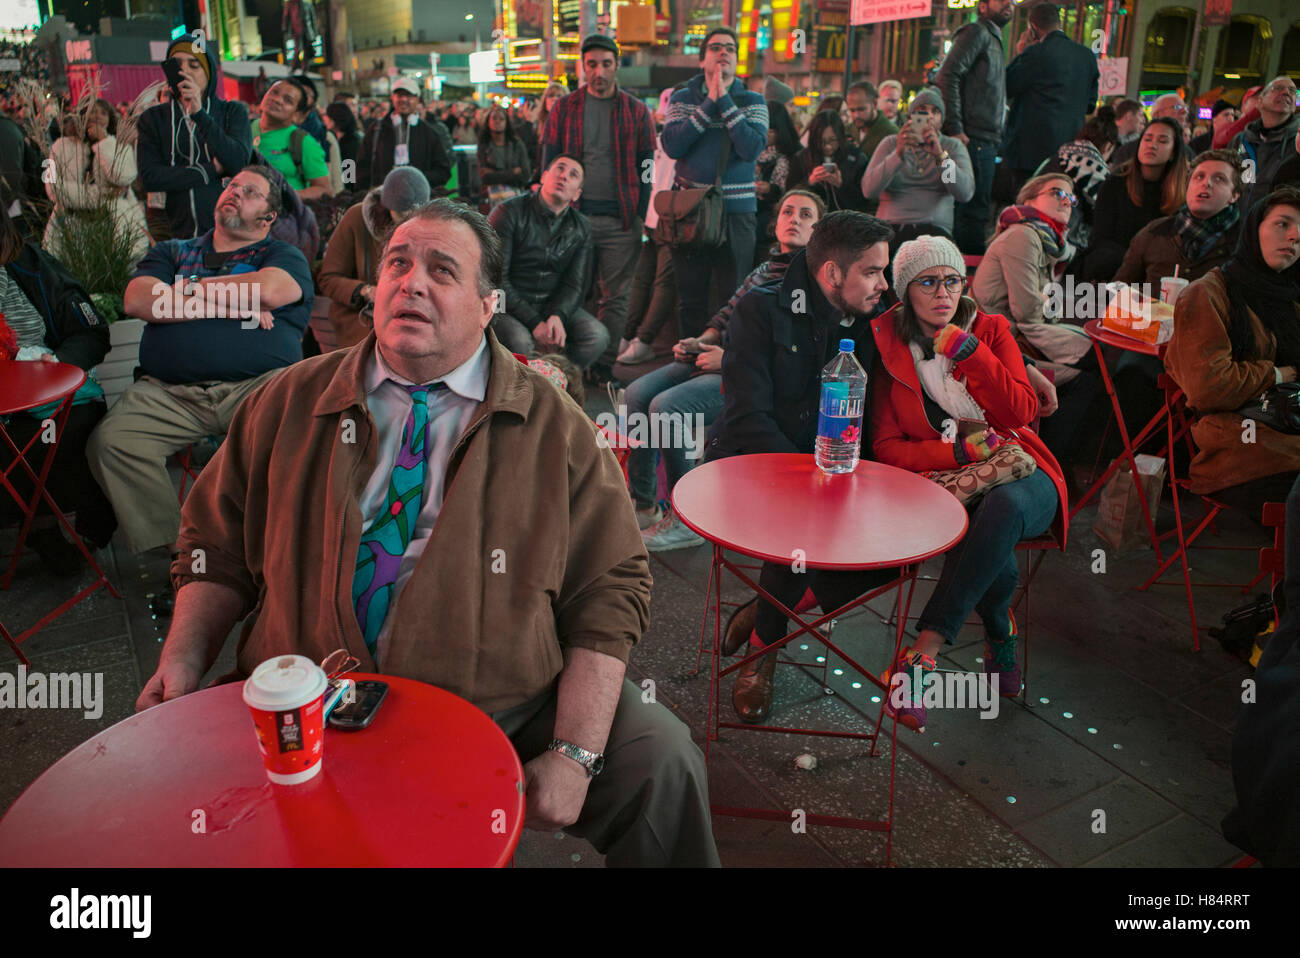 Nueva York, Nueva York, EE.UU. Noviembre 8, 2016. Rostros preocupados en la multitud en Times Square viendo los resultados electorales en una pantalla gigante de crédito: Joseph Reid/Alamy Live News Foto de stock